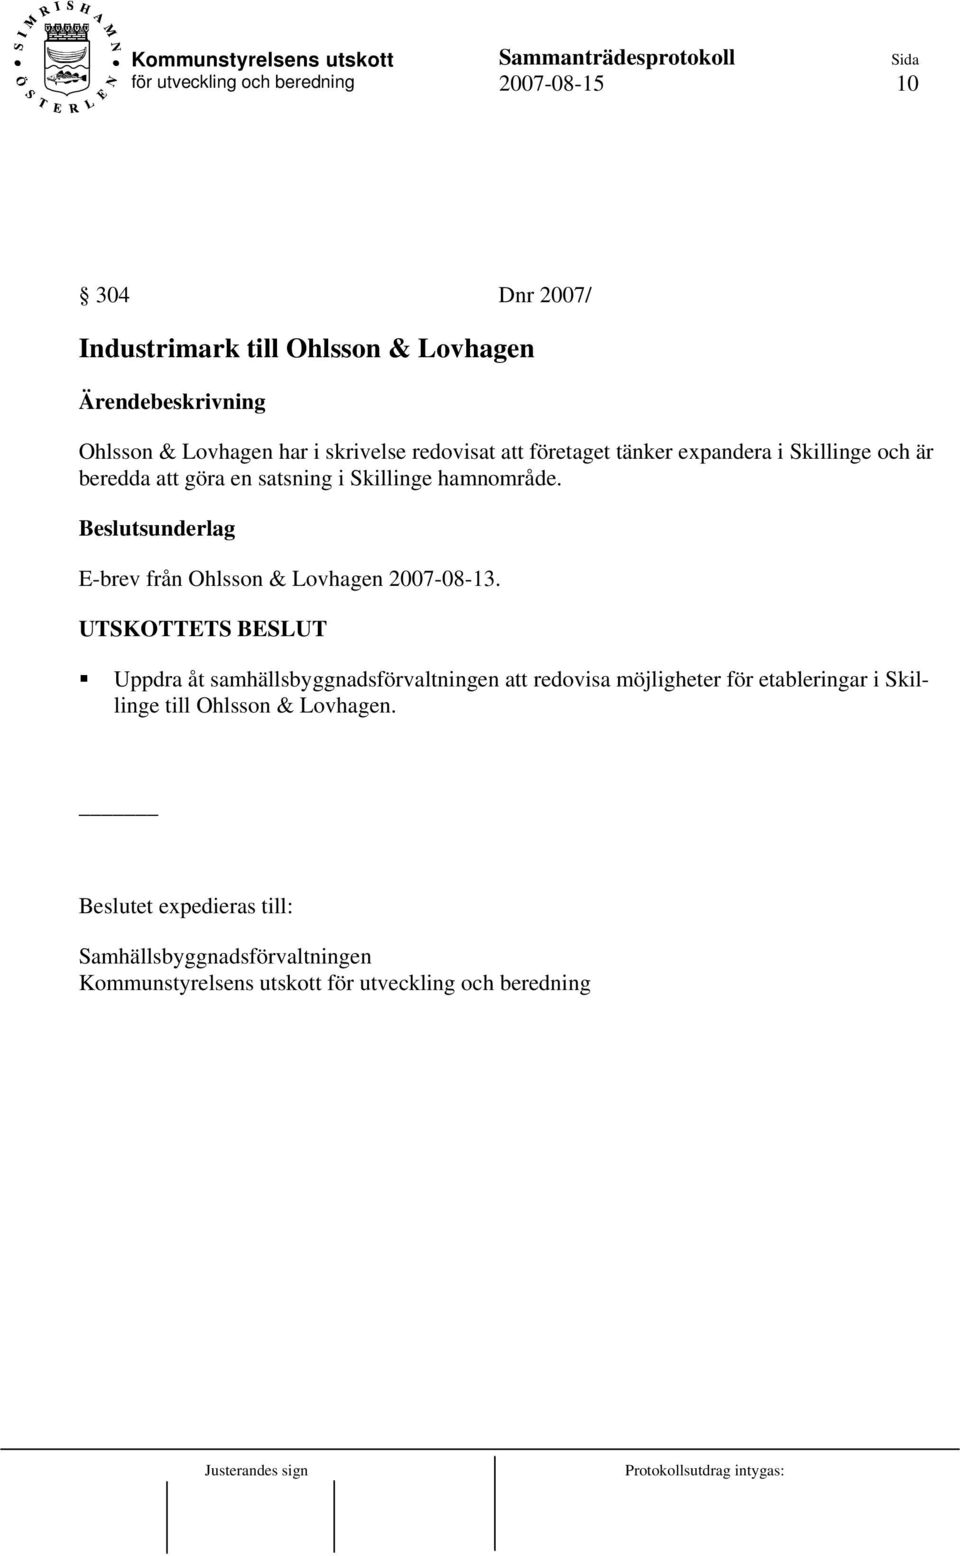 E-brev från Ohlsson & Lovhagen 2007-08-13.